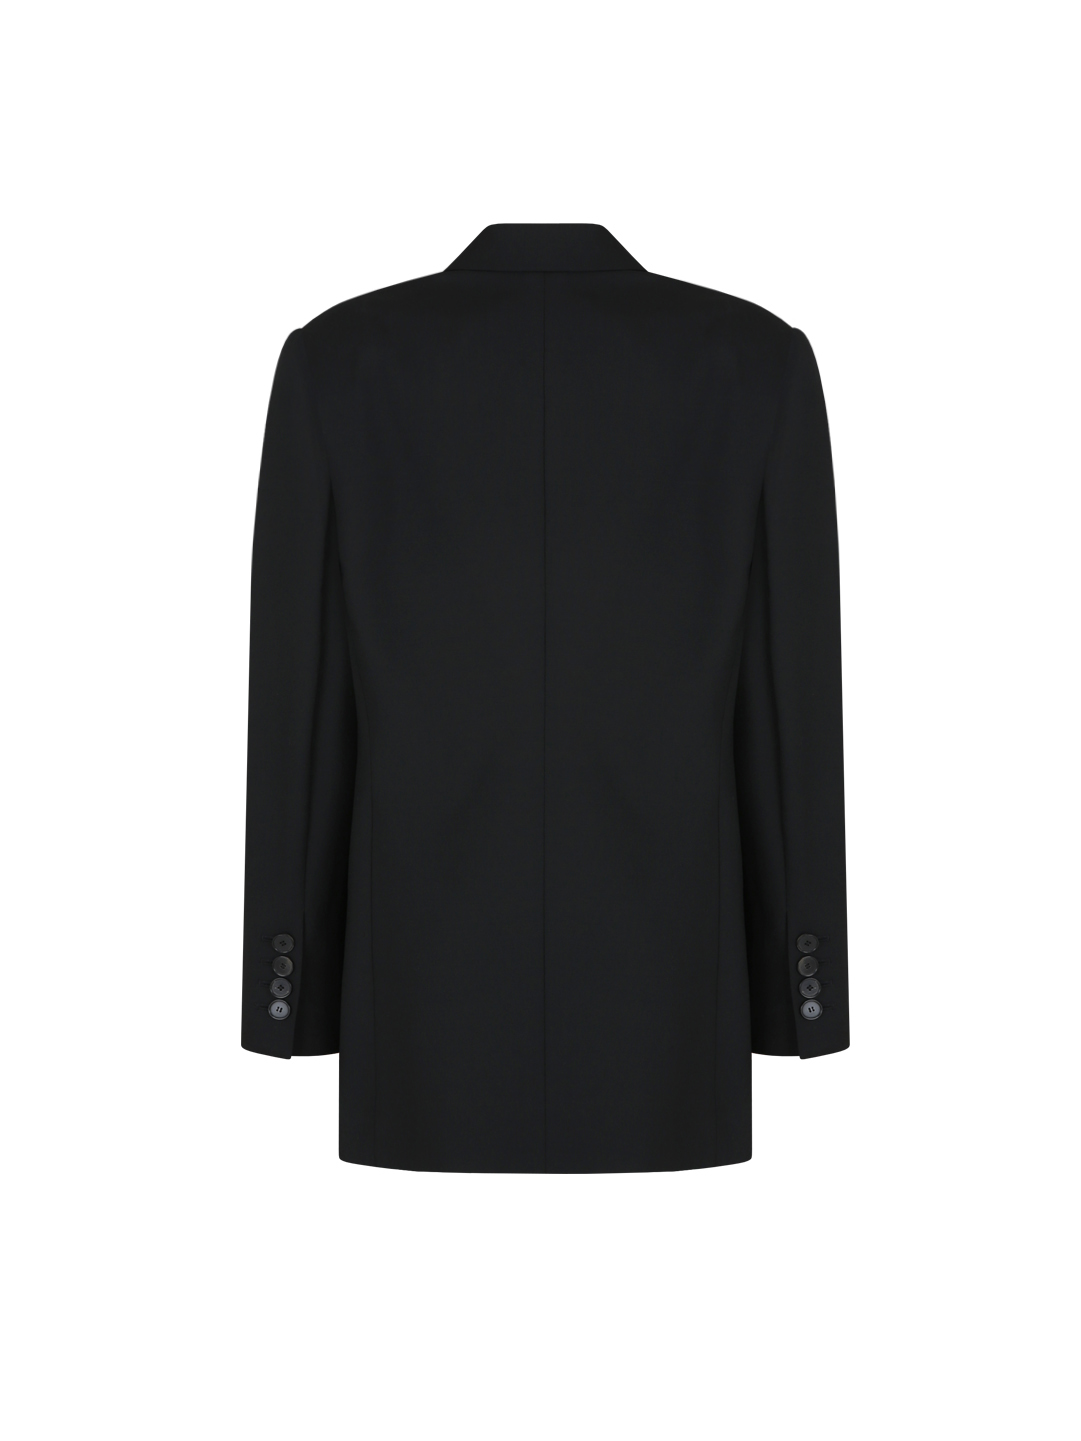 Row fit virgin wool jacket (Black)